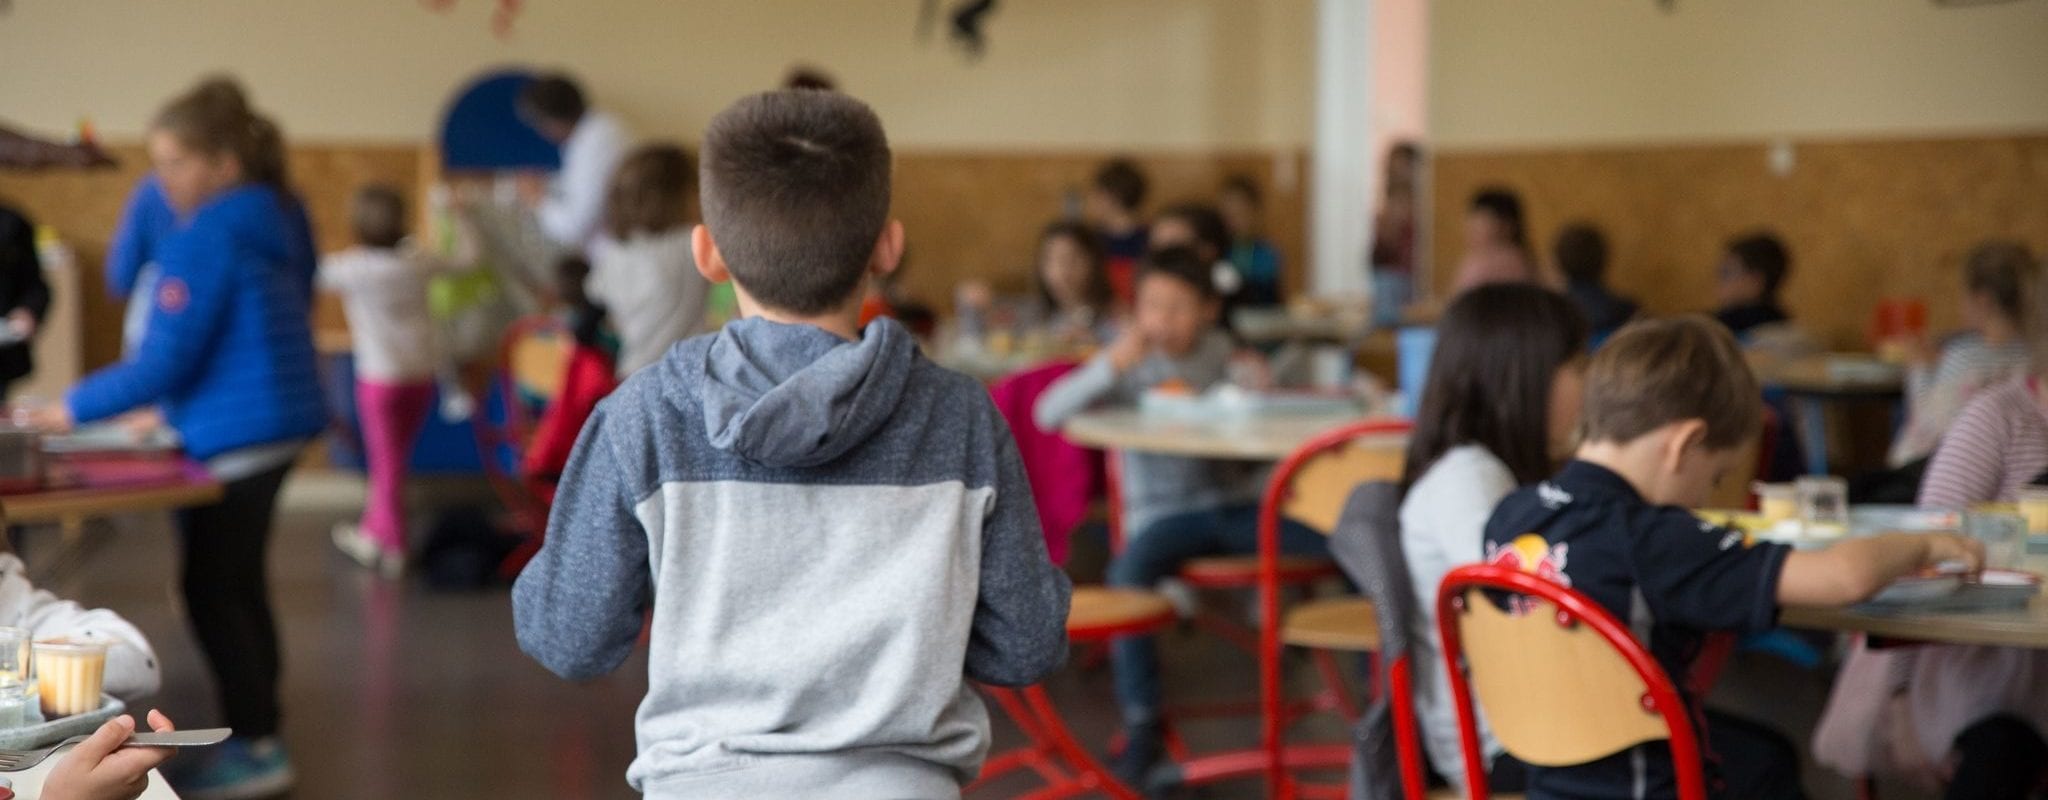 À Molsheim, une classe d’enfants autistes exclue de la cantine scolaire